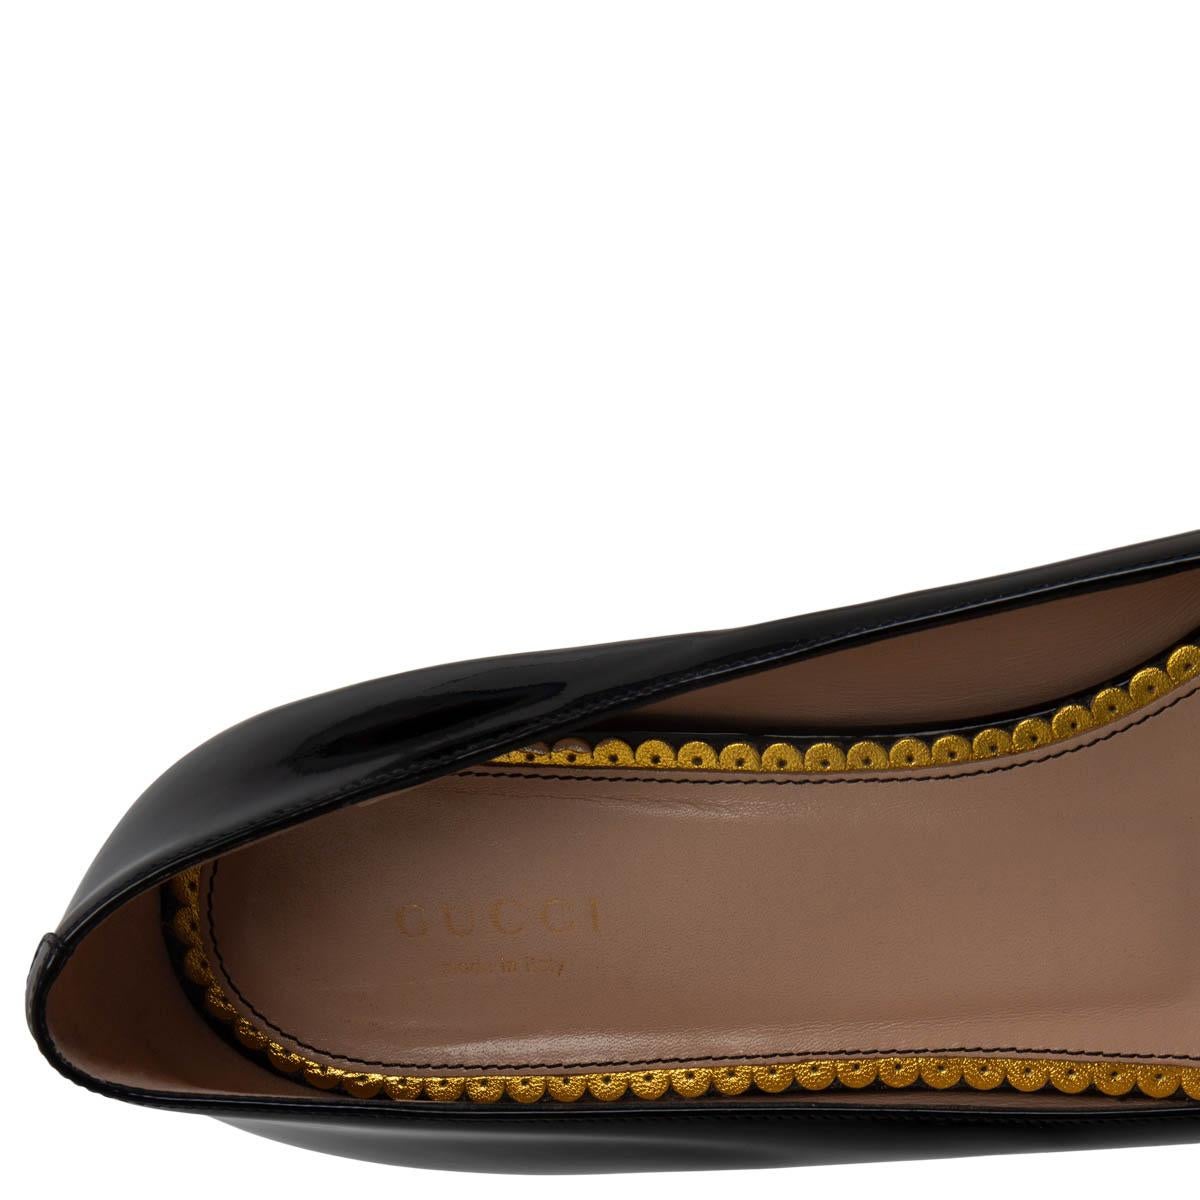 Black GUCCI black patent leather 2016 LEXI LADYBUG BALLET Flats Shoes 42